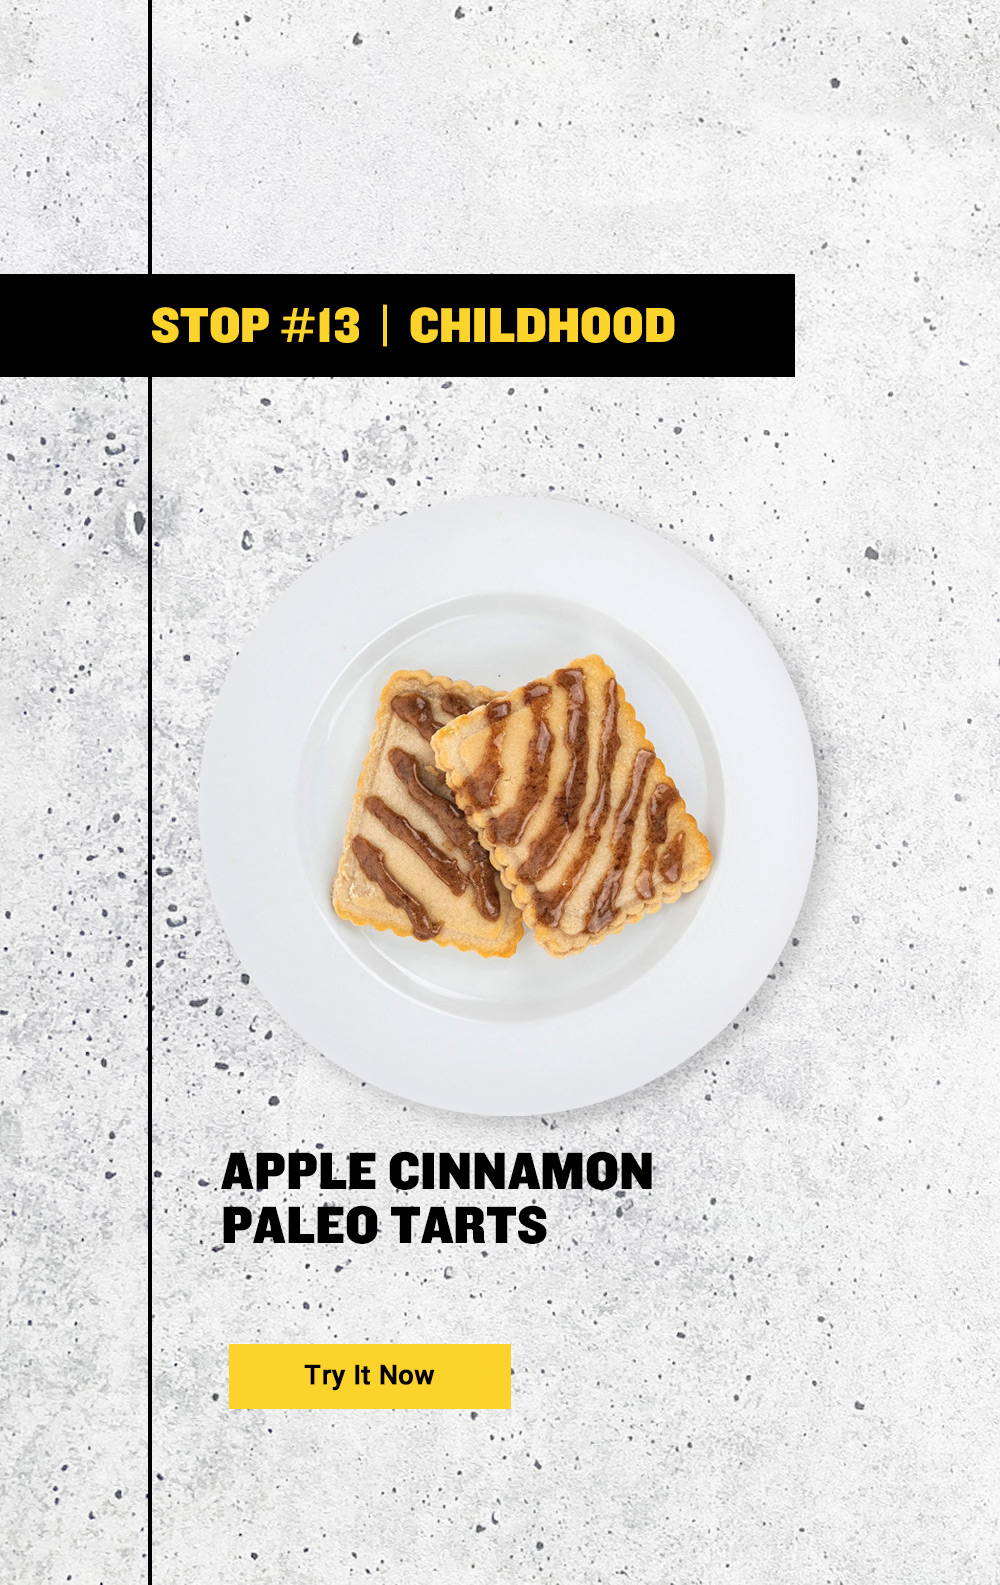 Apple Cinnamon Paleo Tarts